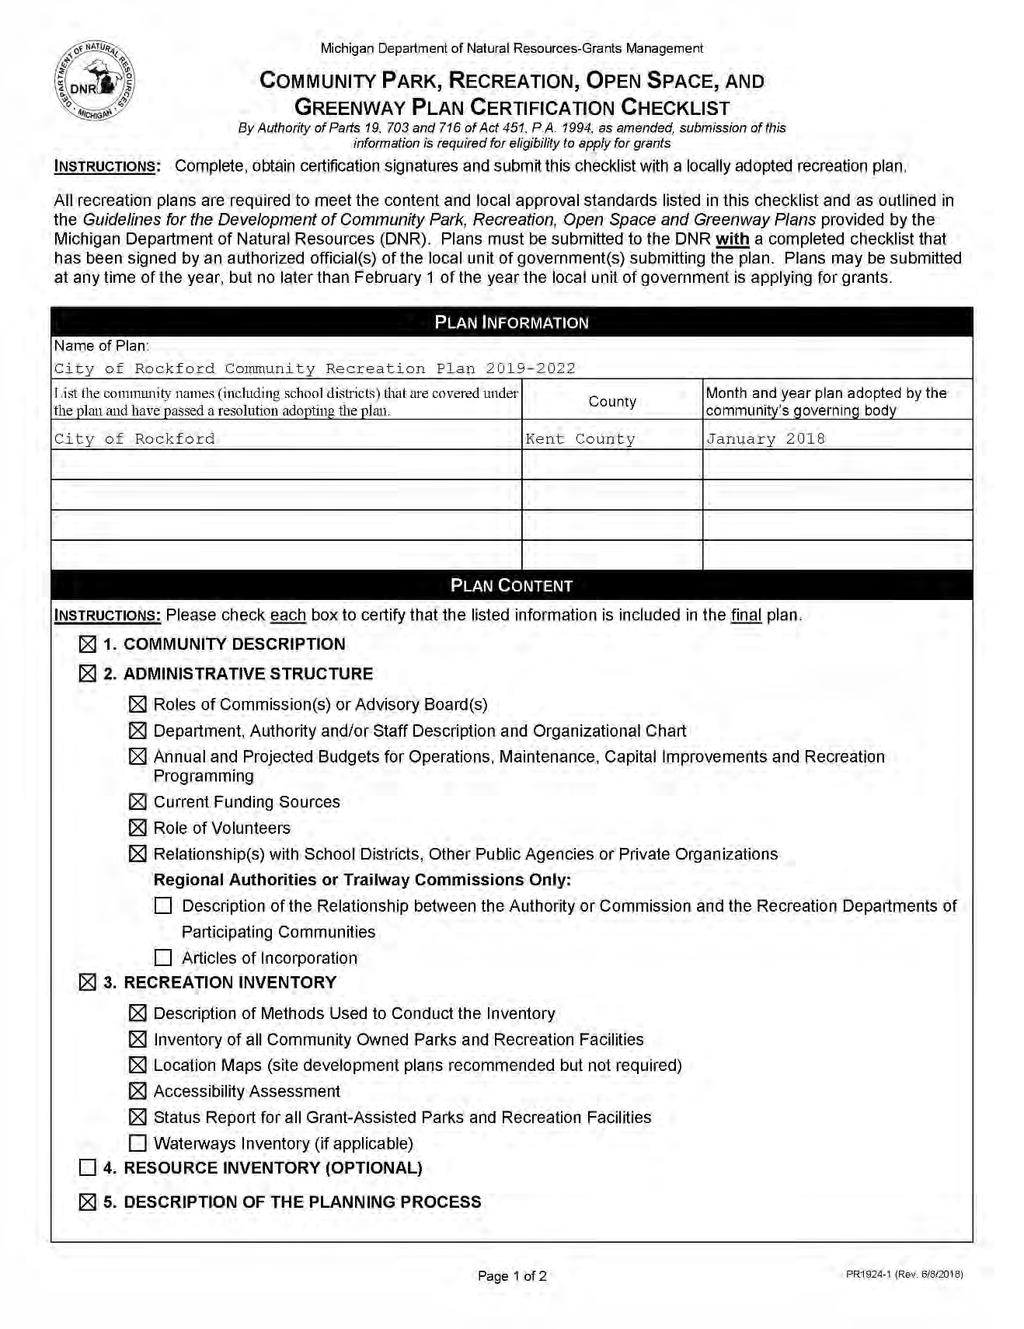 MDNR Certification Checklist 2019 Draft 12-3-18